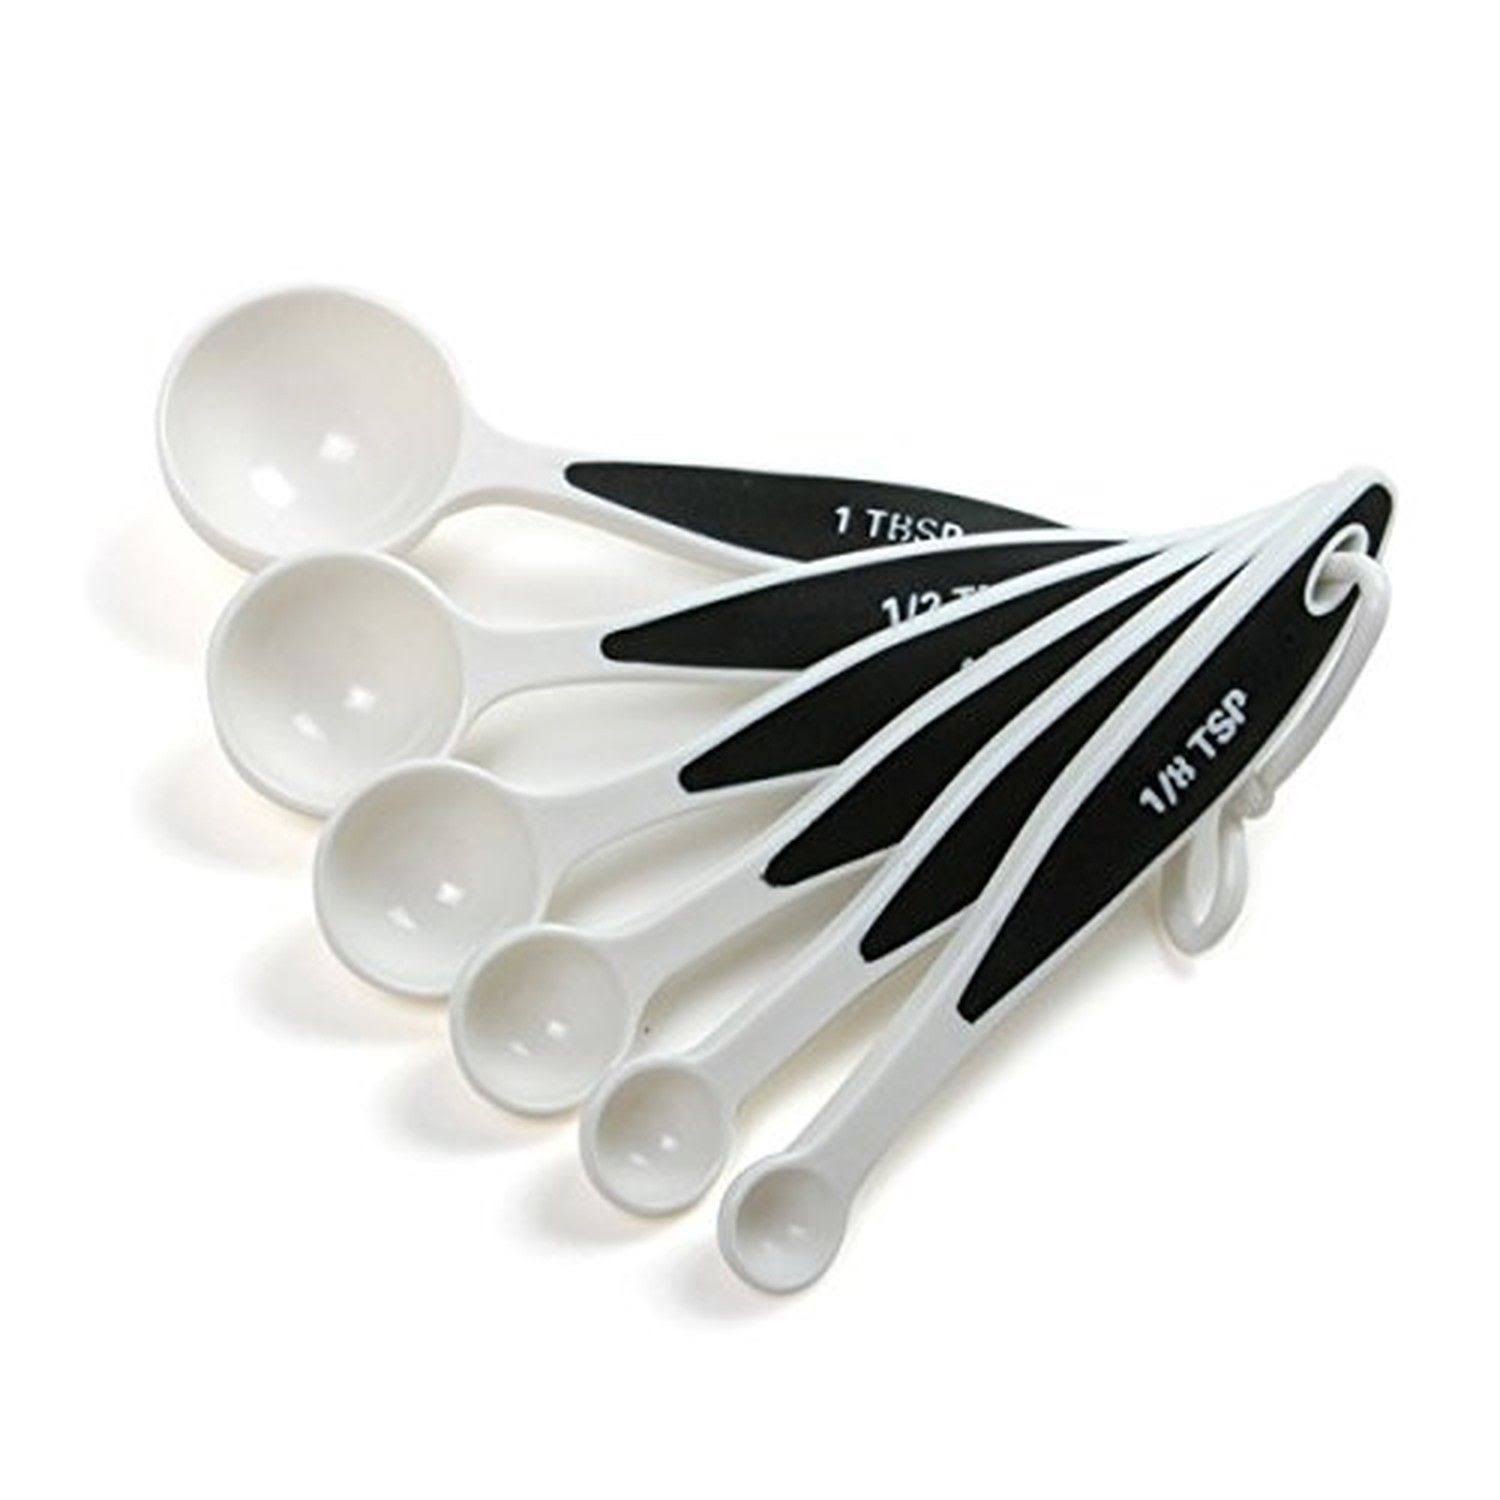 Norpro Grip-ez Measuring Spoons Set - 6pcs